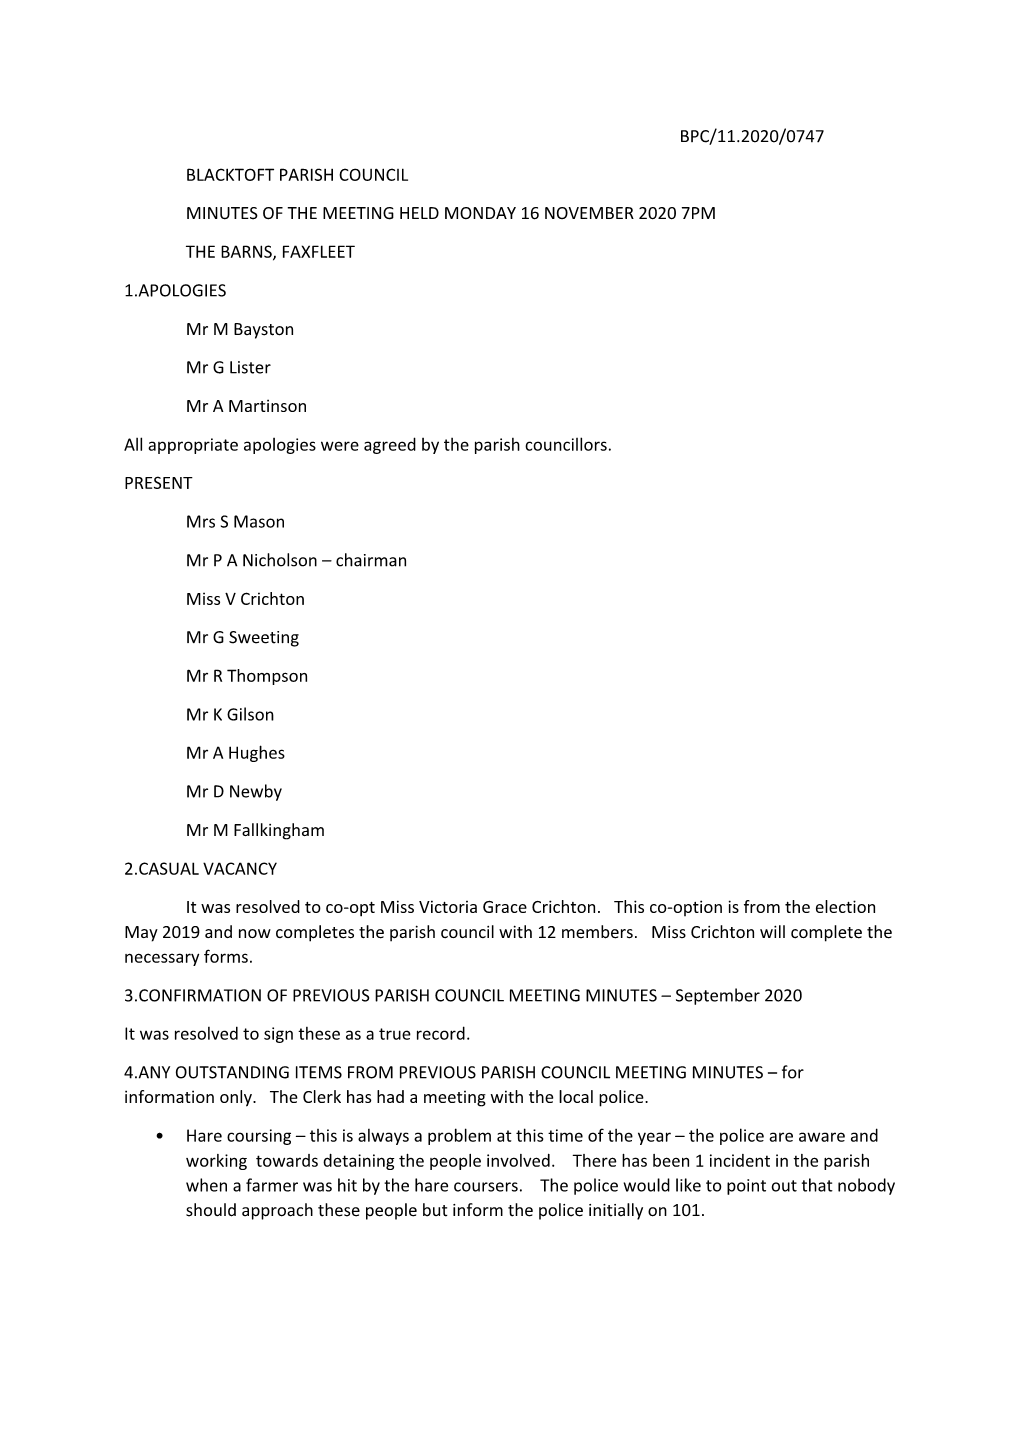 Bpc/11.2020/0747 Blacktoft Parish Council Minutes Of